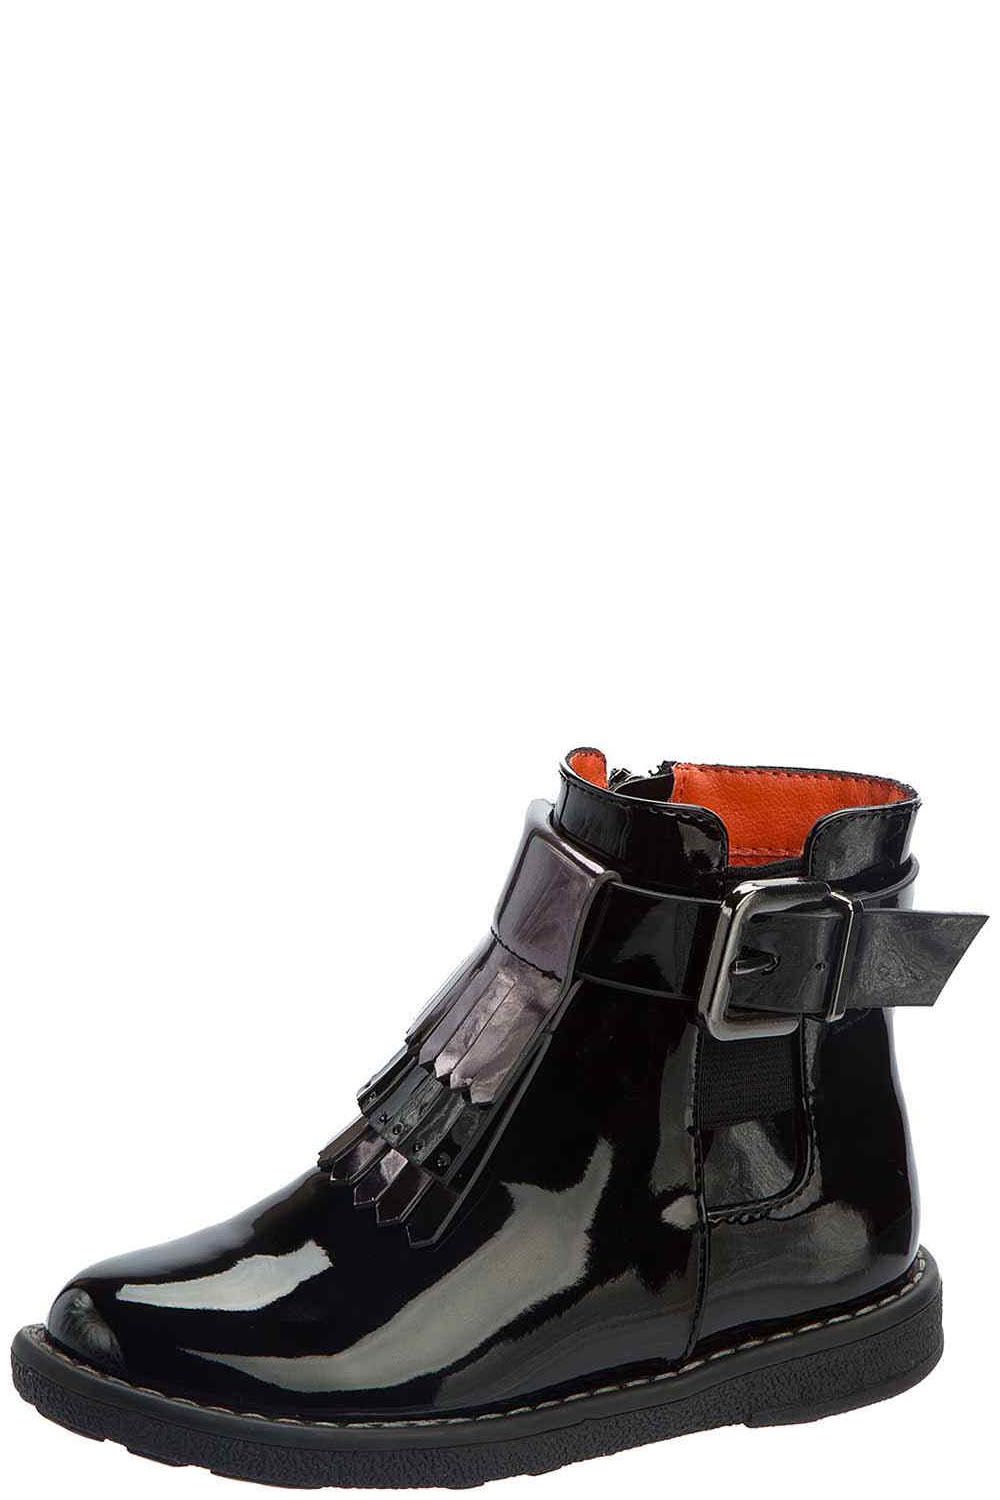 Ботинки Betsy, размер 28, цвет черный 978532/04-04 - фото 1